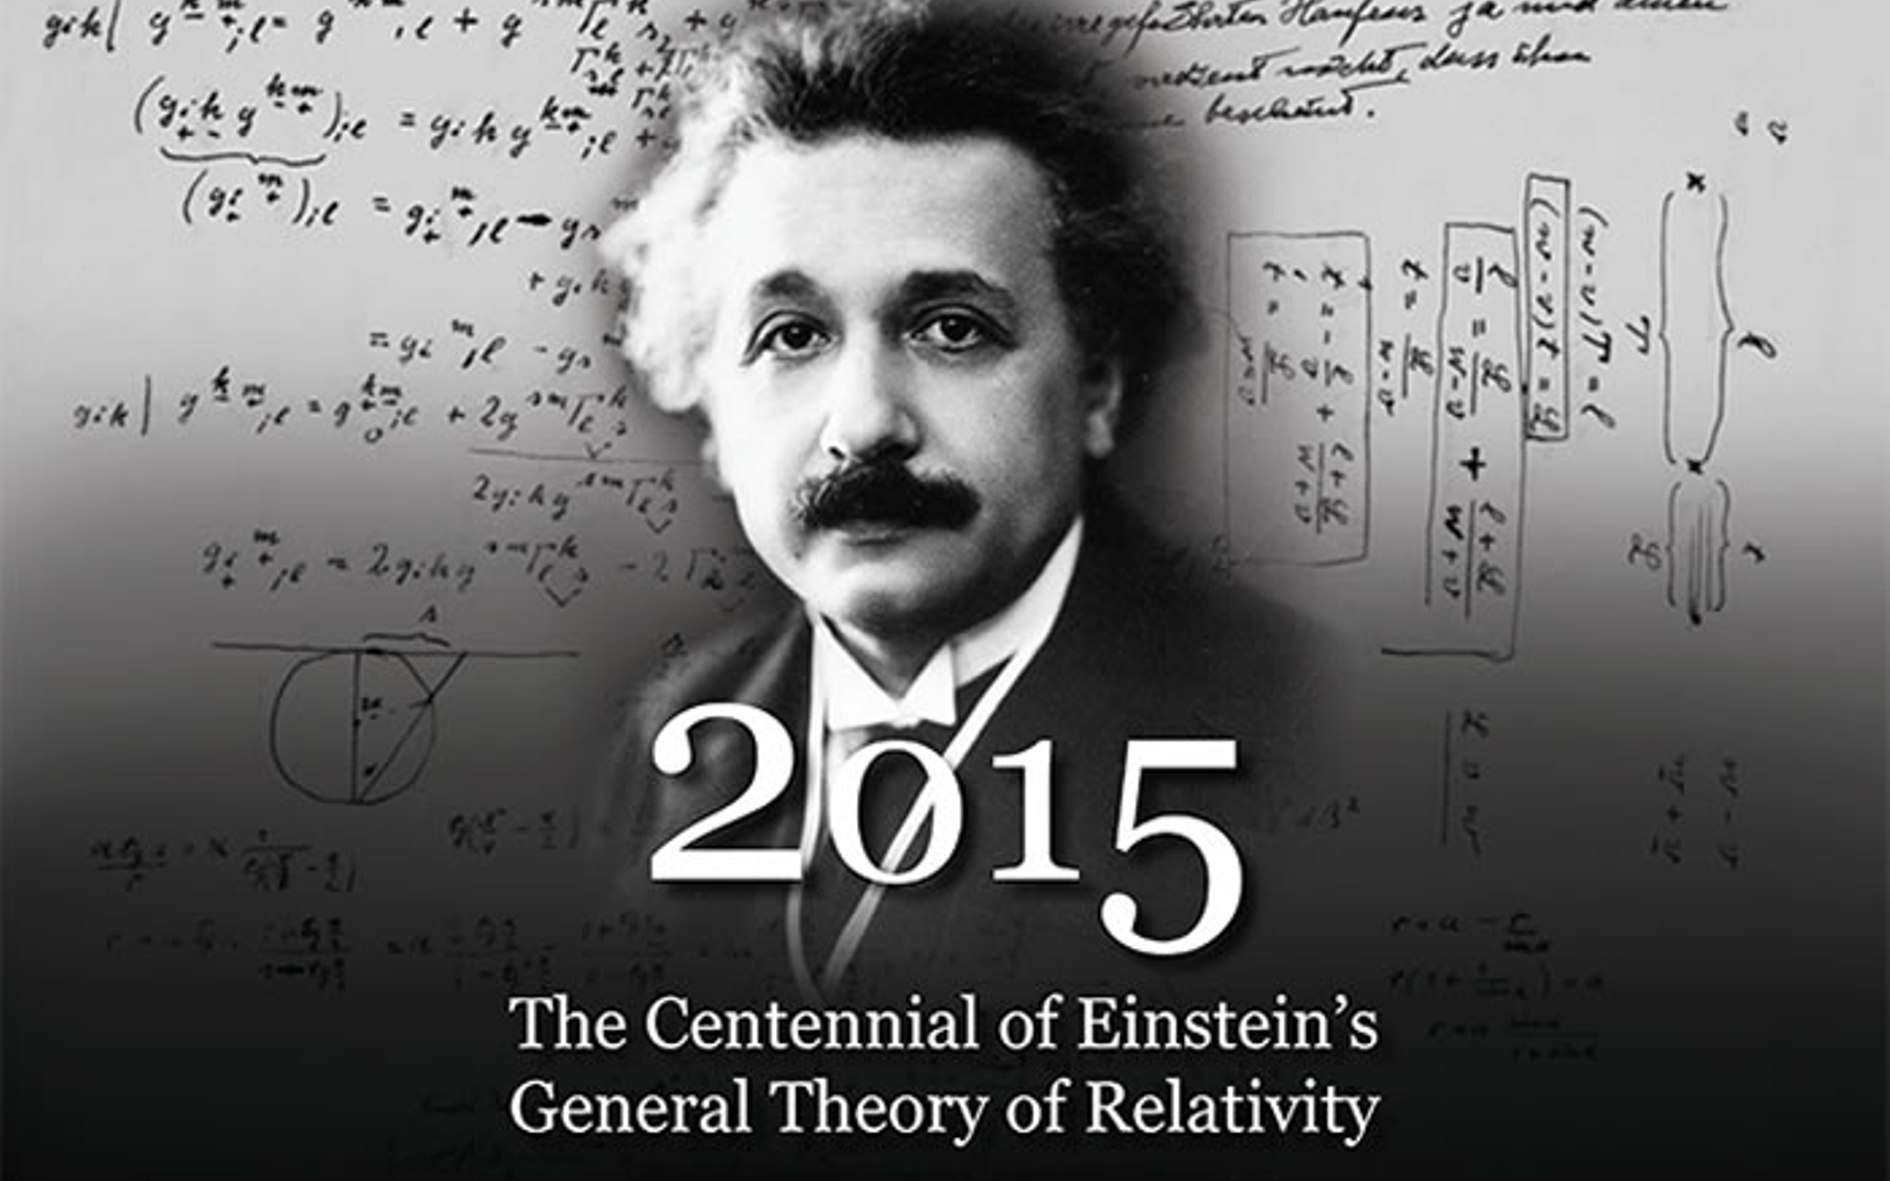 Albert Einstein et ses travaux. © American Institute of Physics